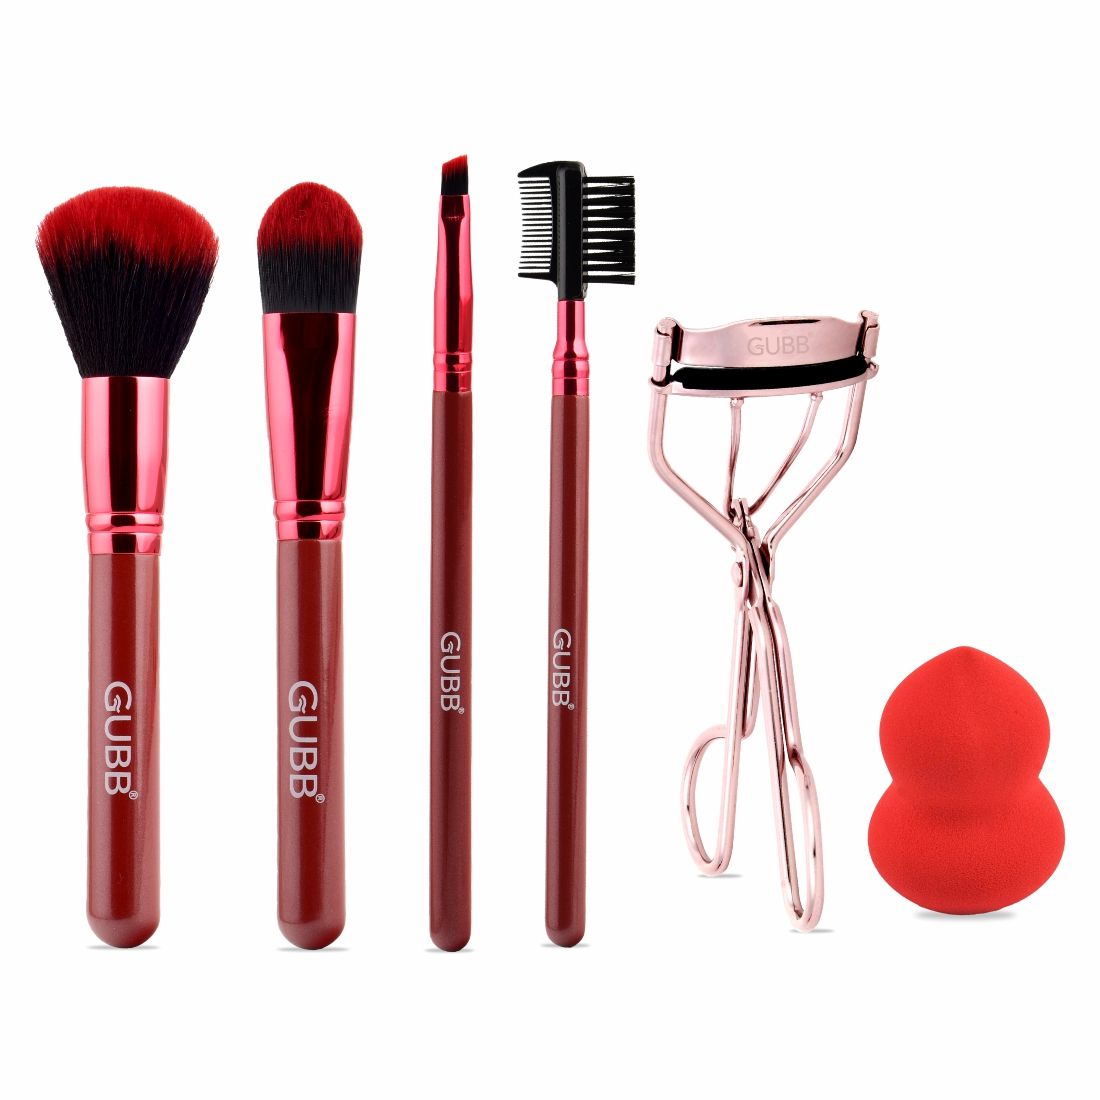 GUBB Beauty Surprise Kit, 4 Brushes, Beauty Blender and Eyelash Curler